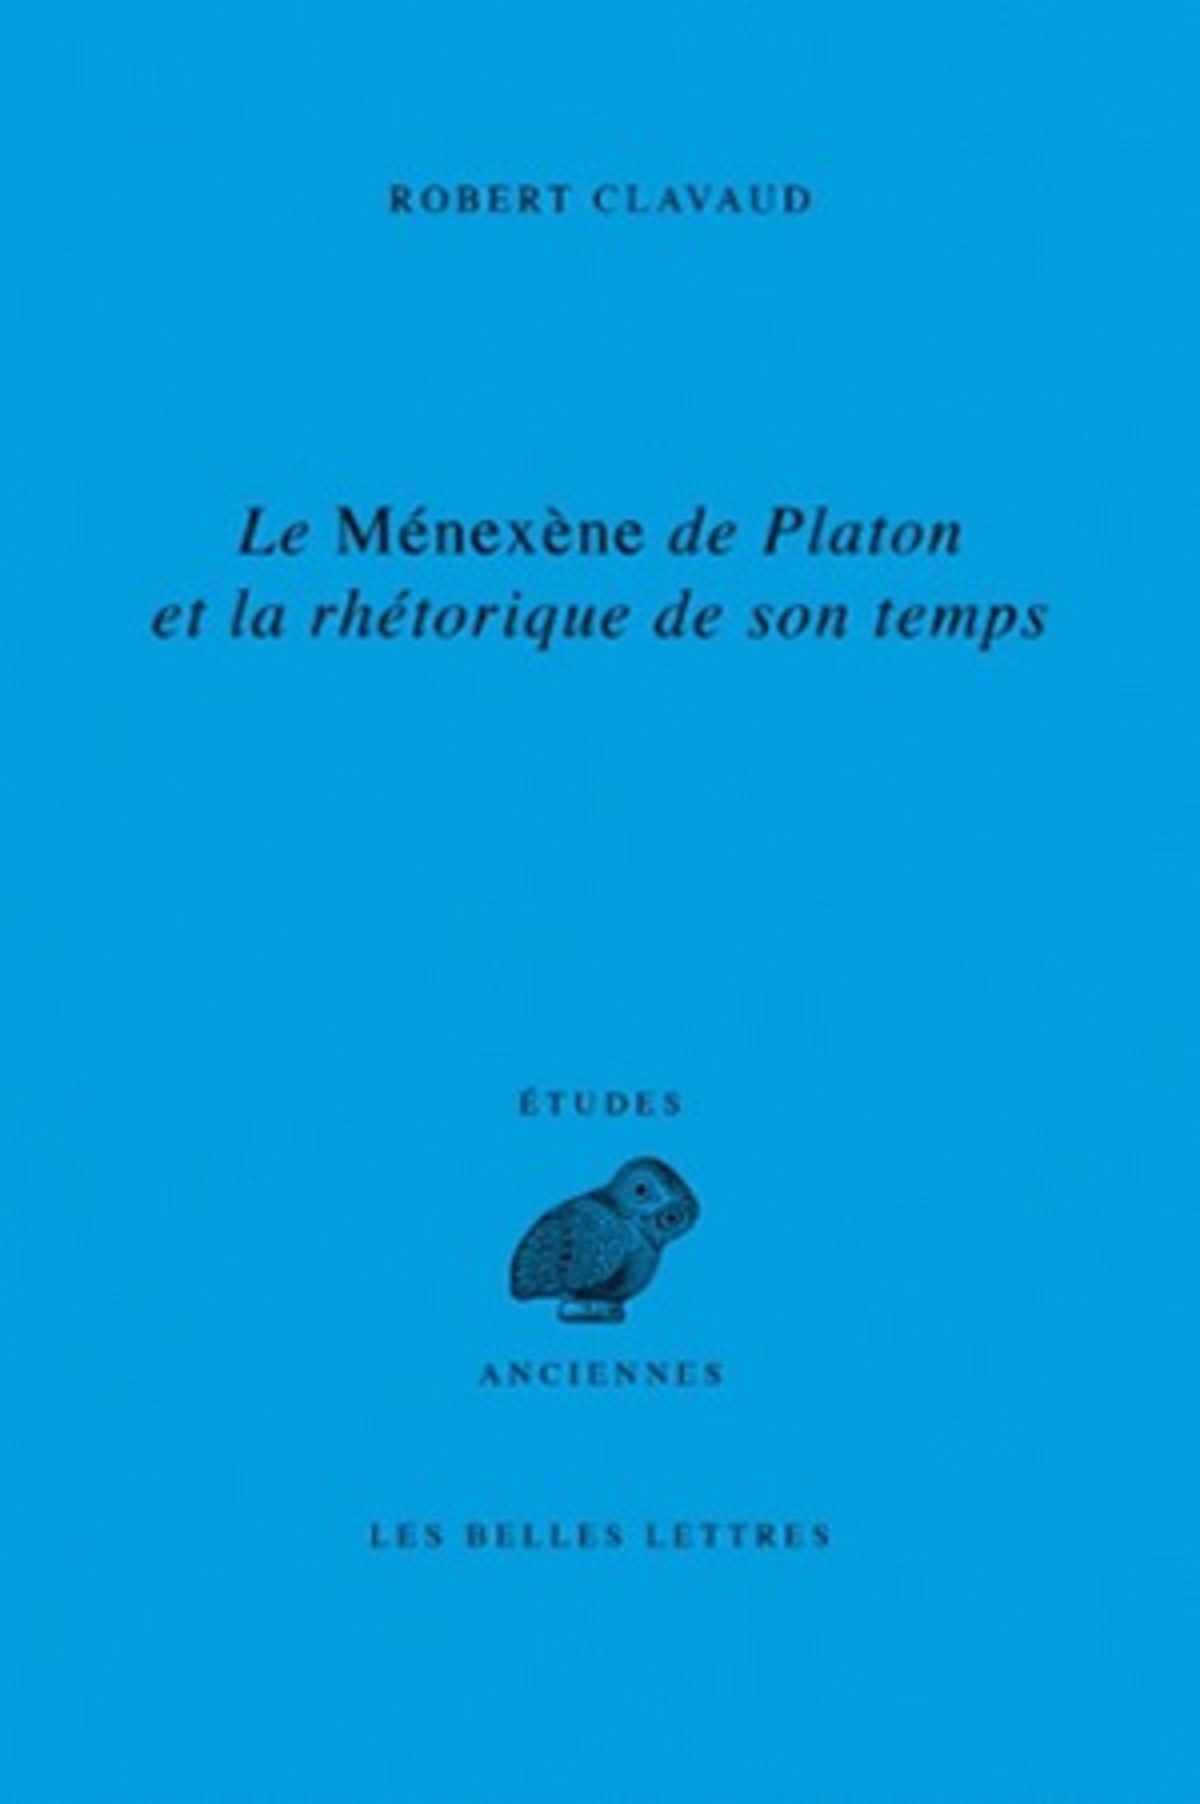 Le Ménéxène de Platon et la rhétorique de son temps